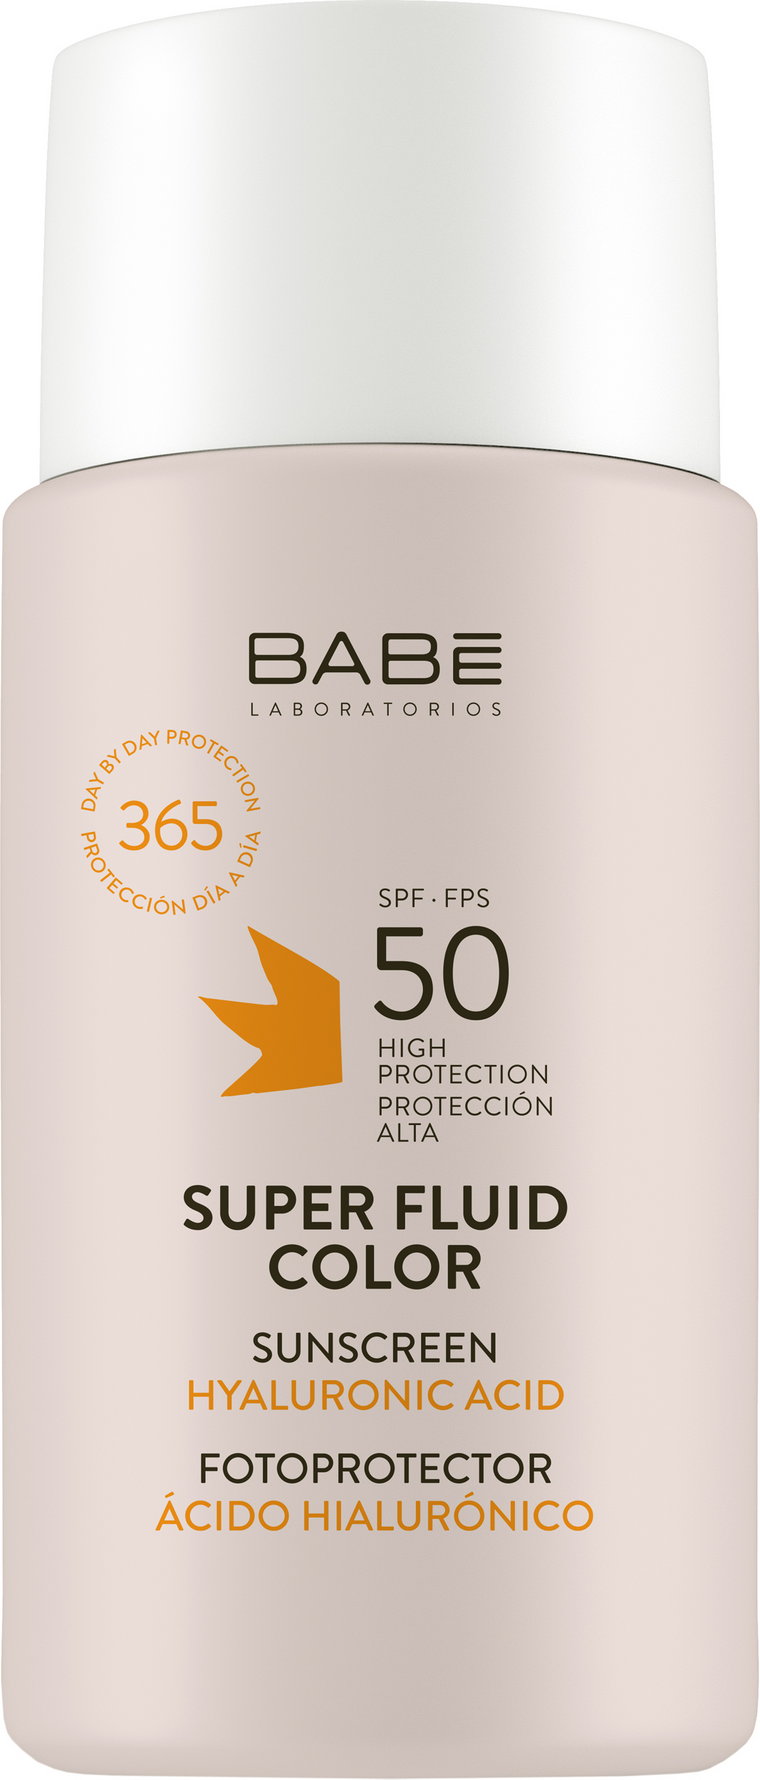 Superfluid przeciwsłoneczny BB z efektem tonującym Babe Laboratorios SPF 50 dla wszystkich typów skóry 50 ml (8436571631114). Kosmetyki do ochrony przeciwsłonecznej